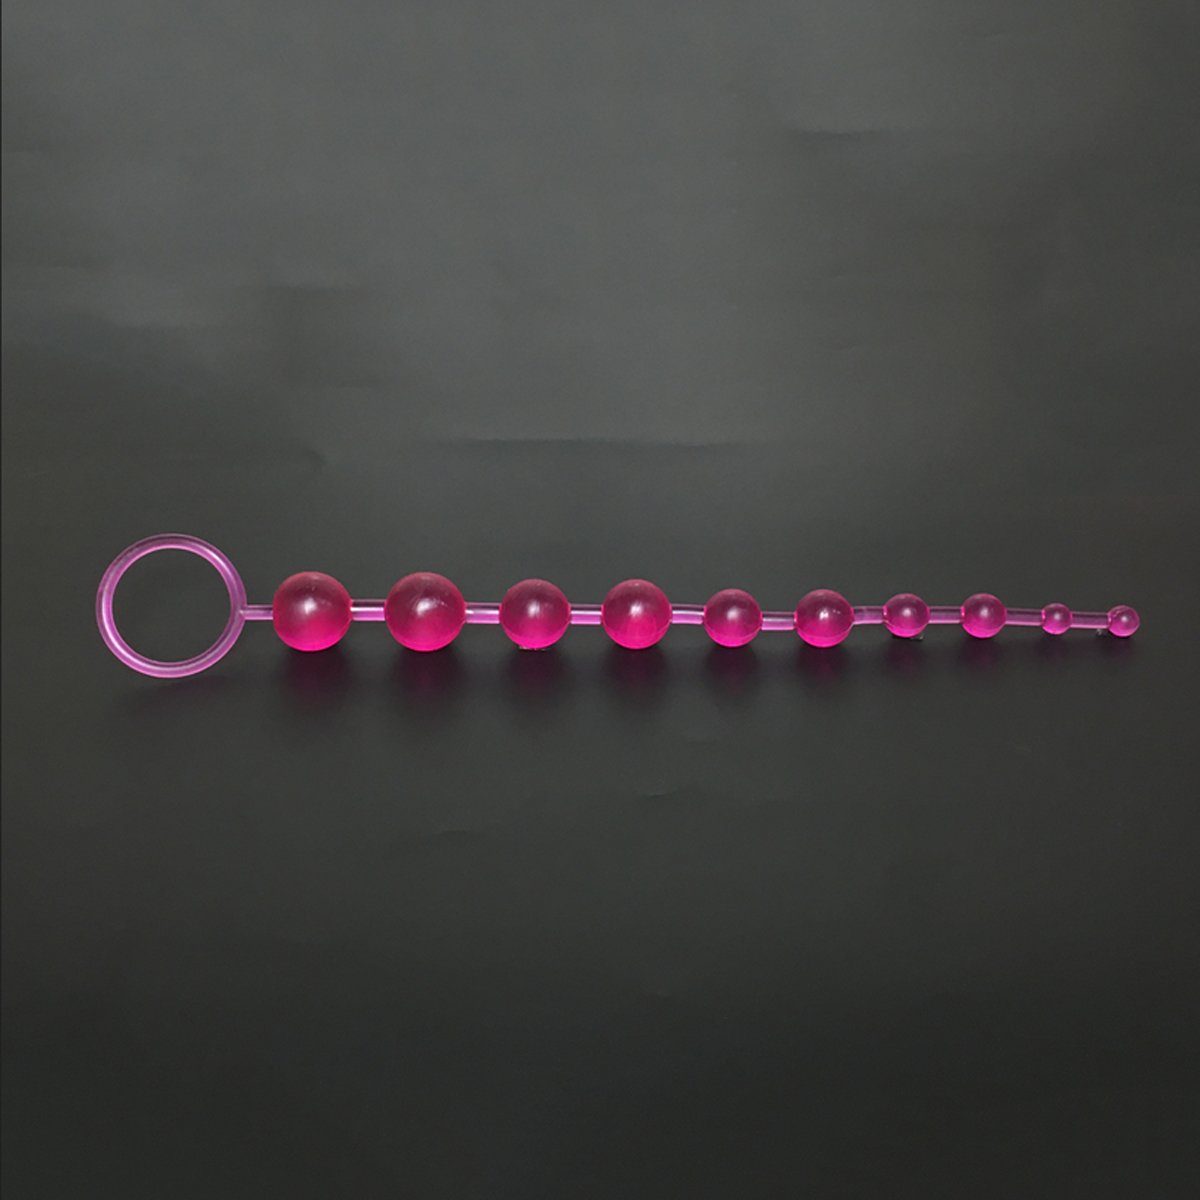 TPFSecret Analkette für Männer und Frauen, ergonomische große 29,5cm Anal Kette, mit 10 Perlen, und unterschiedlichem Durchmesser - Farbe: Lila | Anal-Ketten